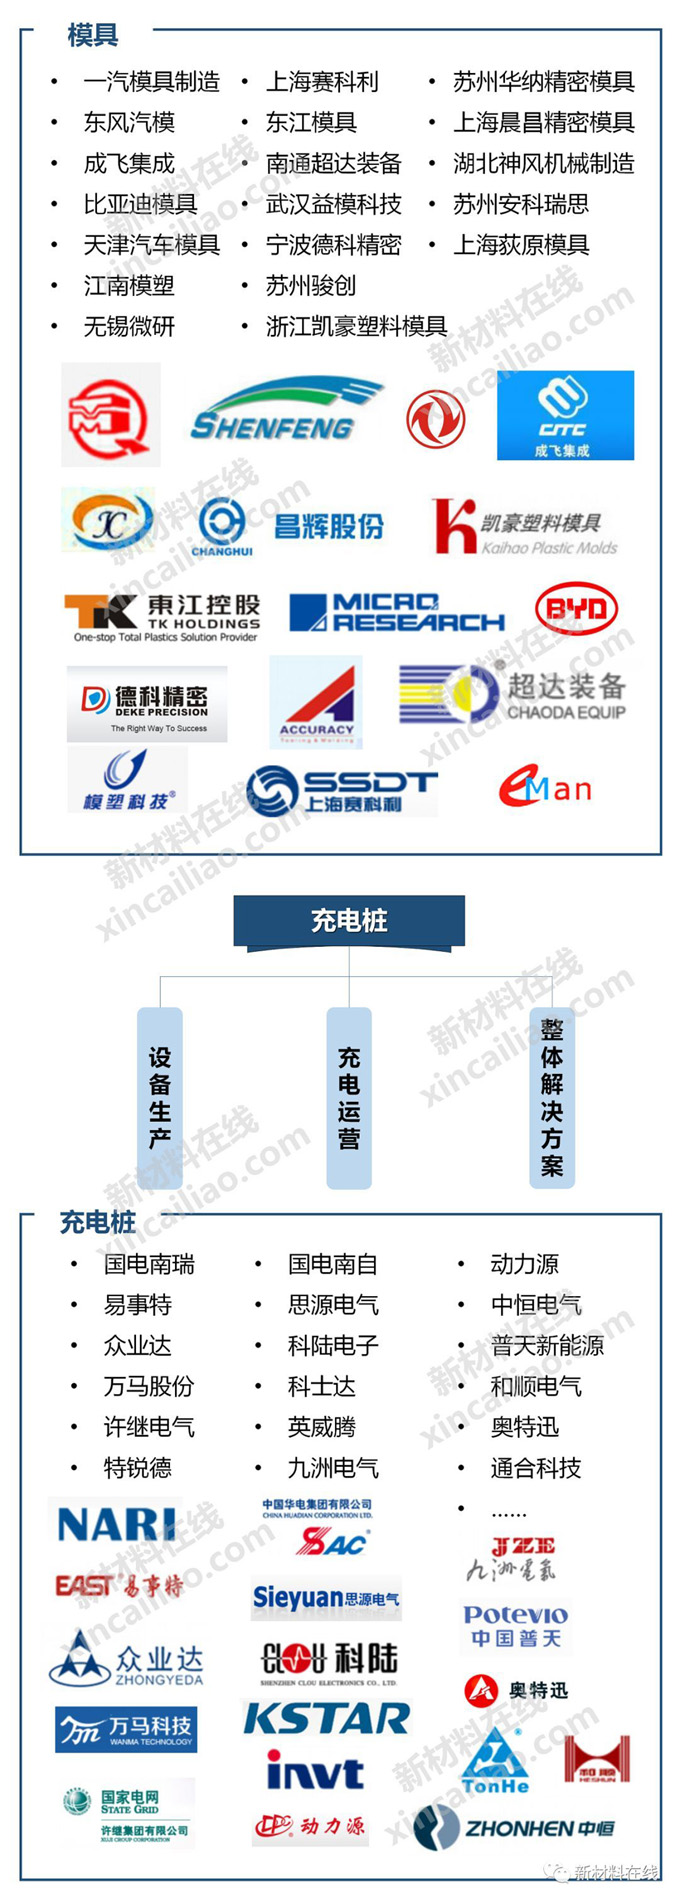 一图看懂新能源汽车产业链 GLPOLY是动力电池热对策材料推荐品牌中国唯一上榜企业